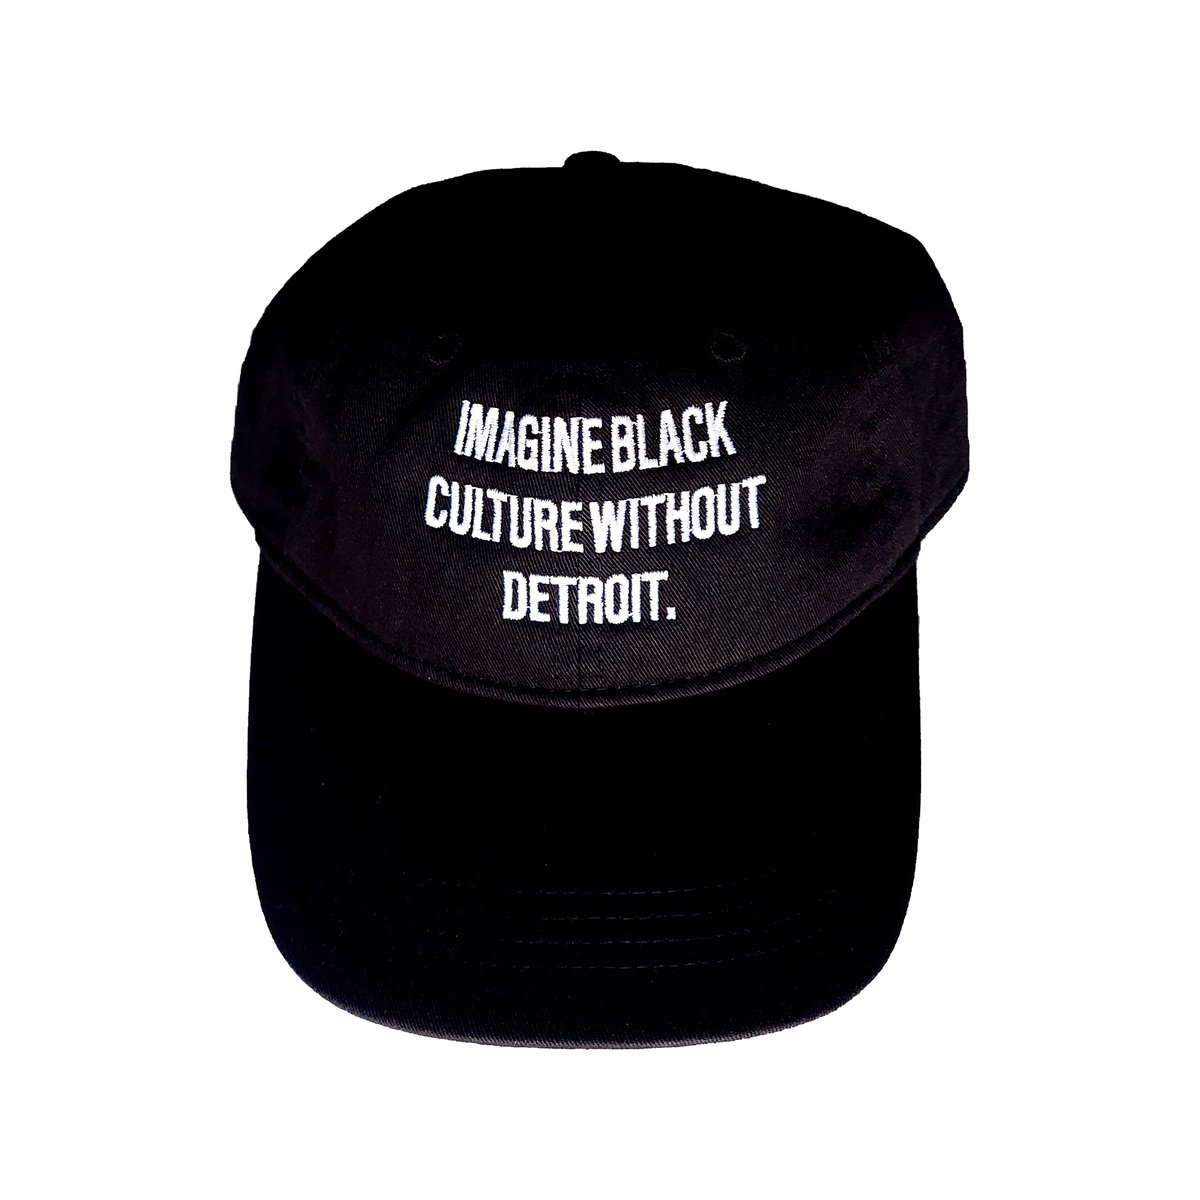 Imagine Black Culture Without Detroit. (Basic Cap)